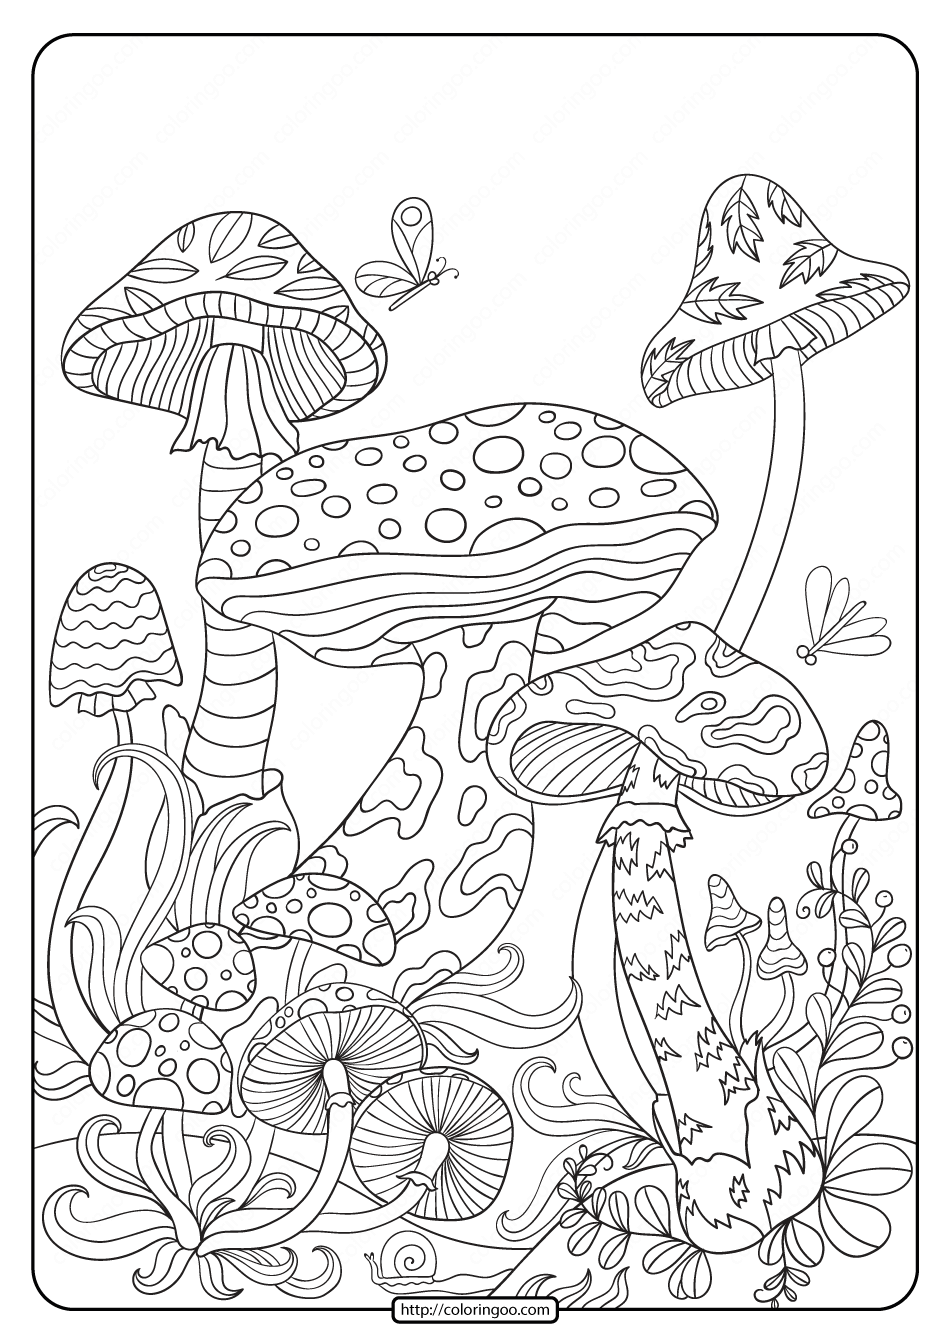 Раскраска про грибы для детей антистресс